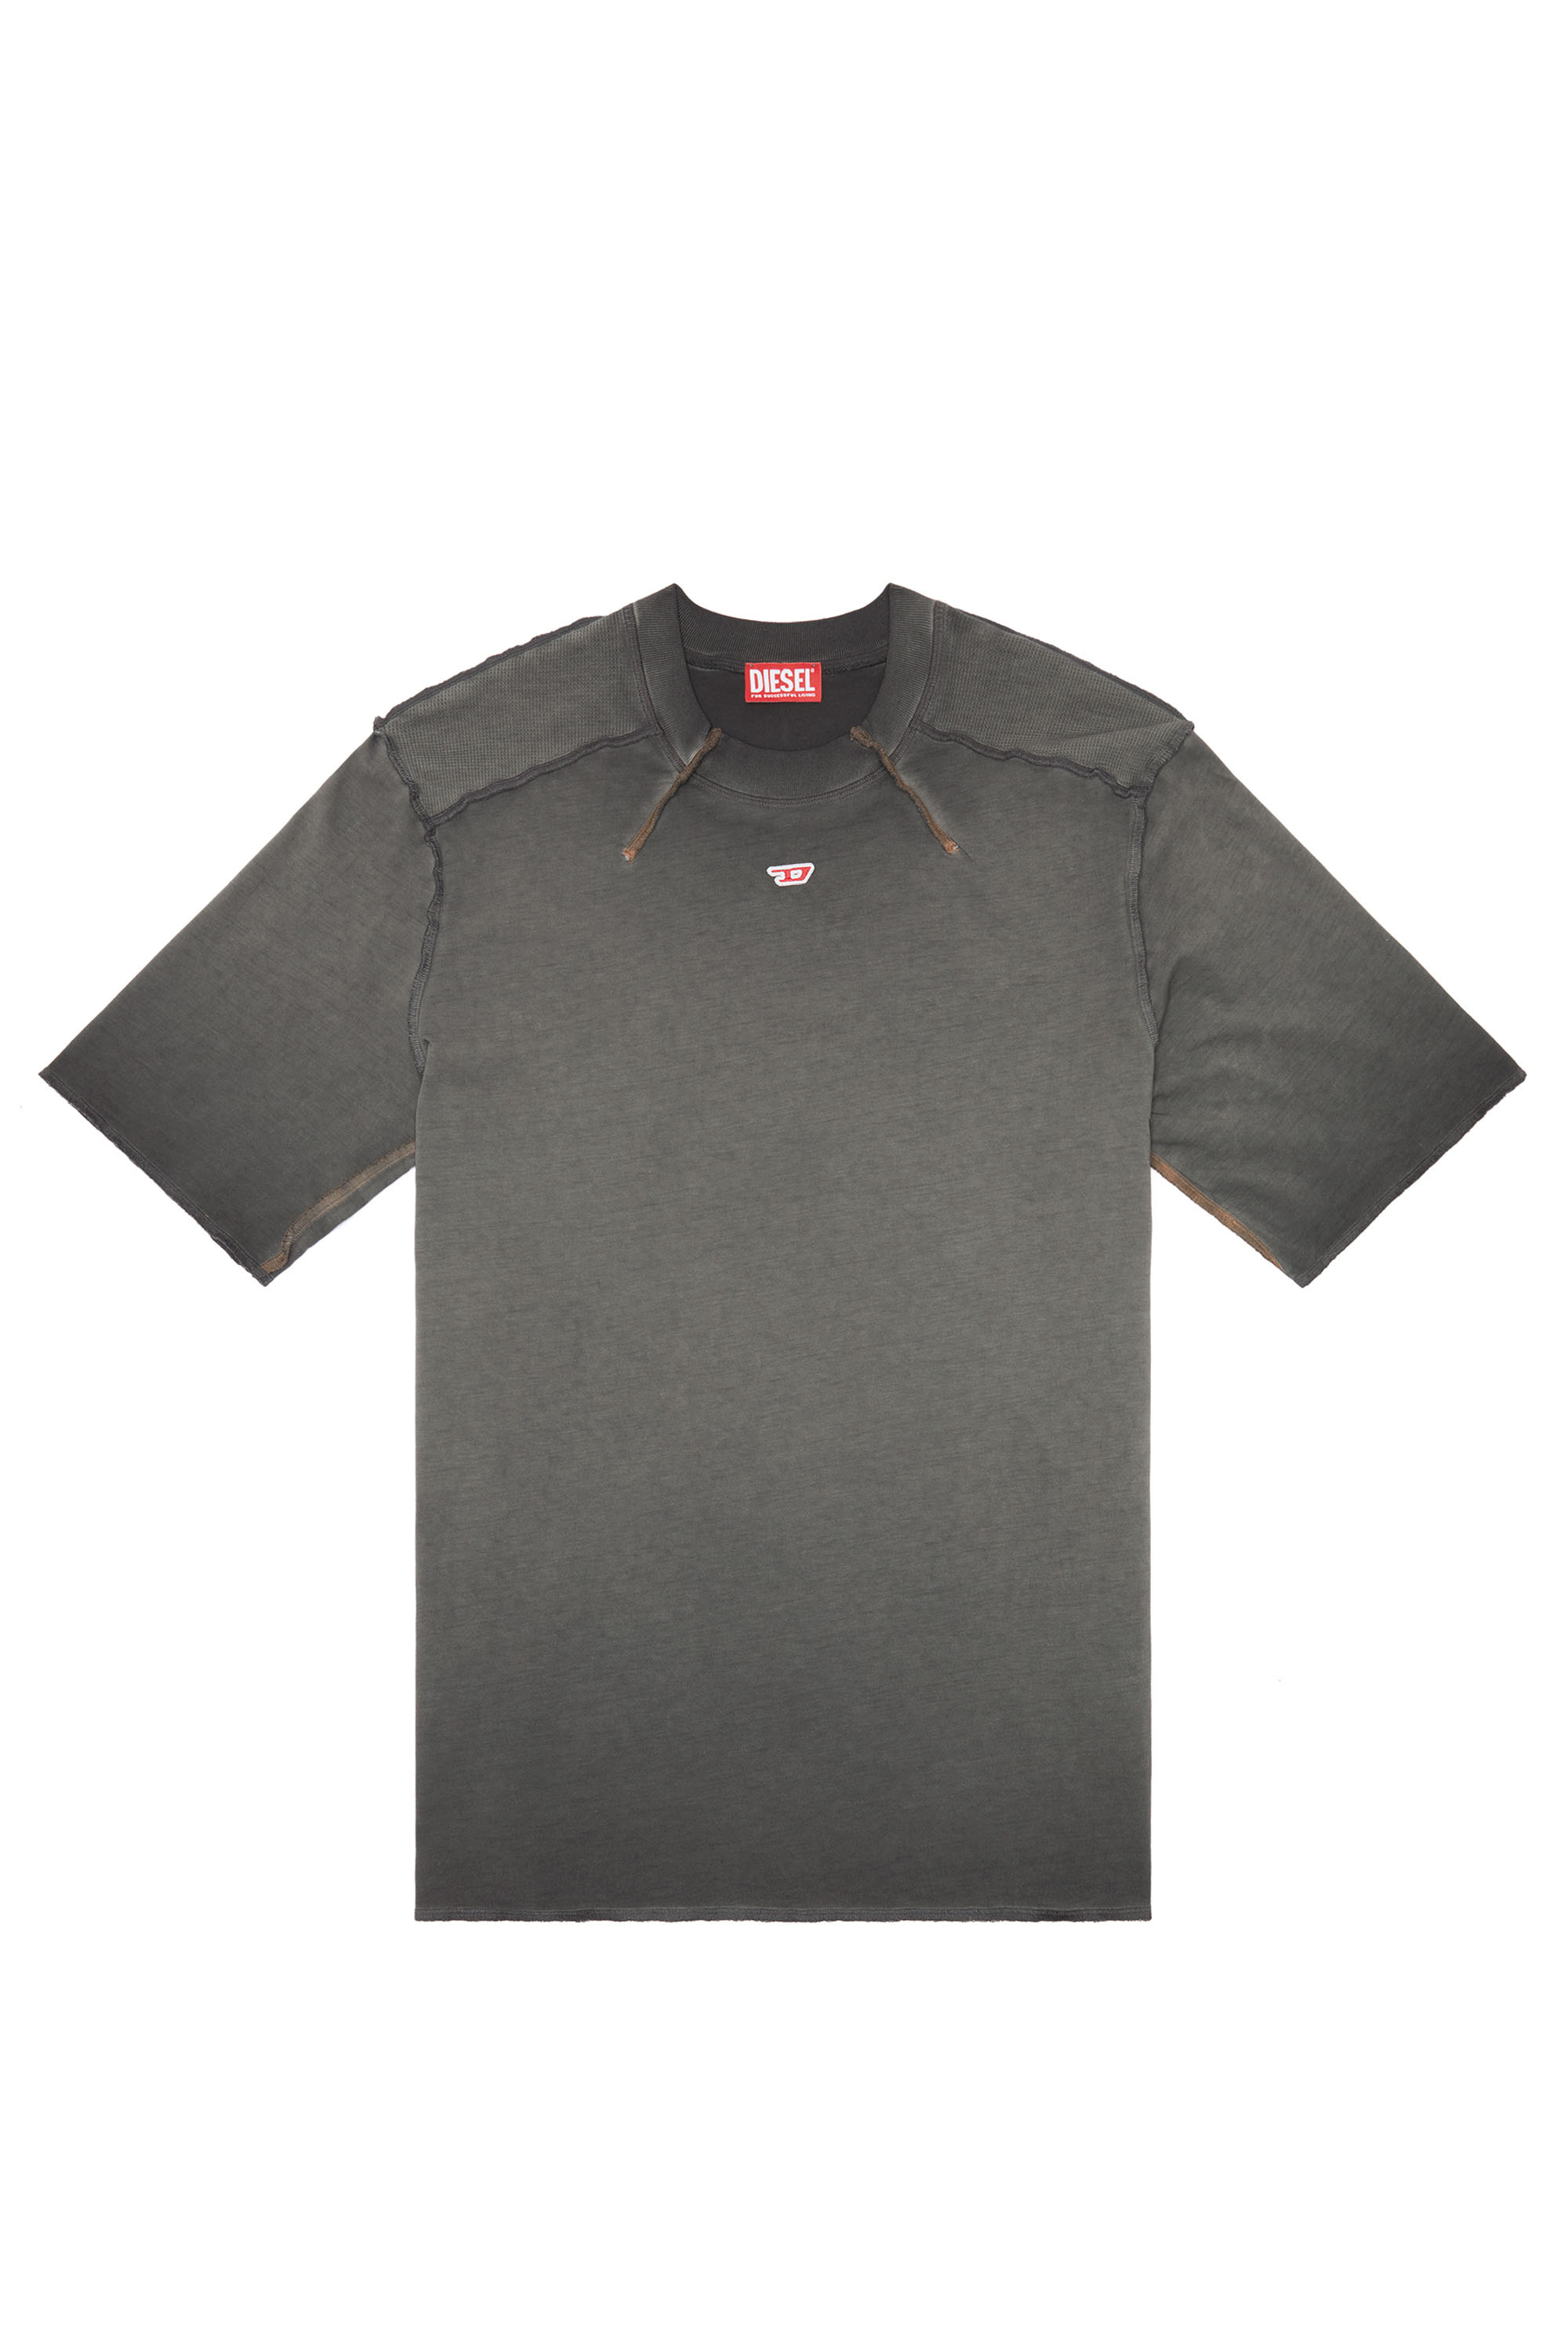 Diesel - T-ERIE-N, Herren T-Shirt mit Schultern mit Mikro-Waffel-Muster in Grau - Image 3